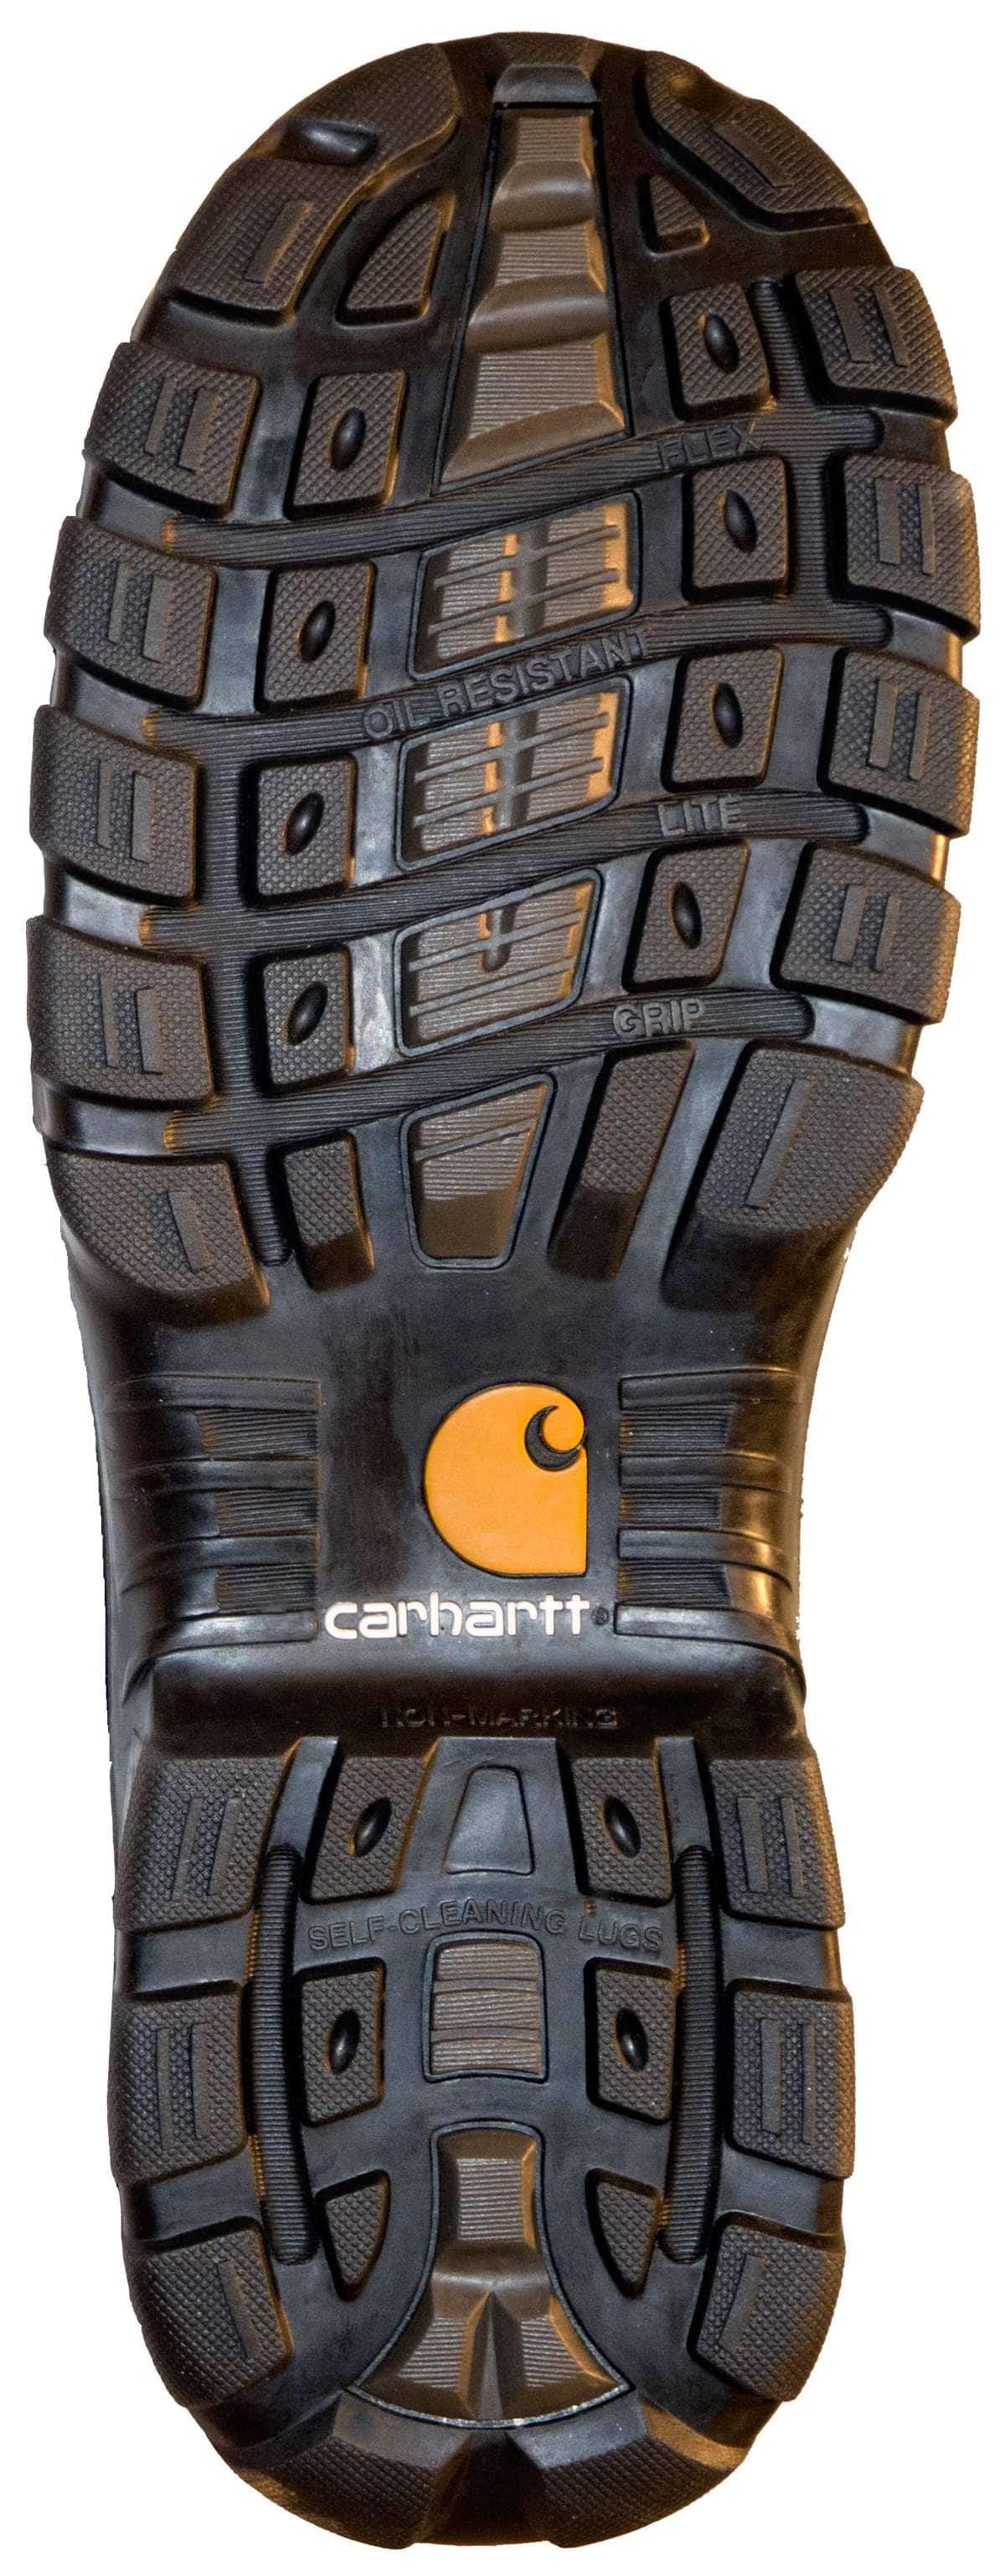 carhartt dress boots